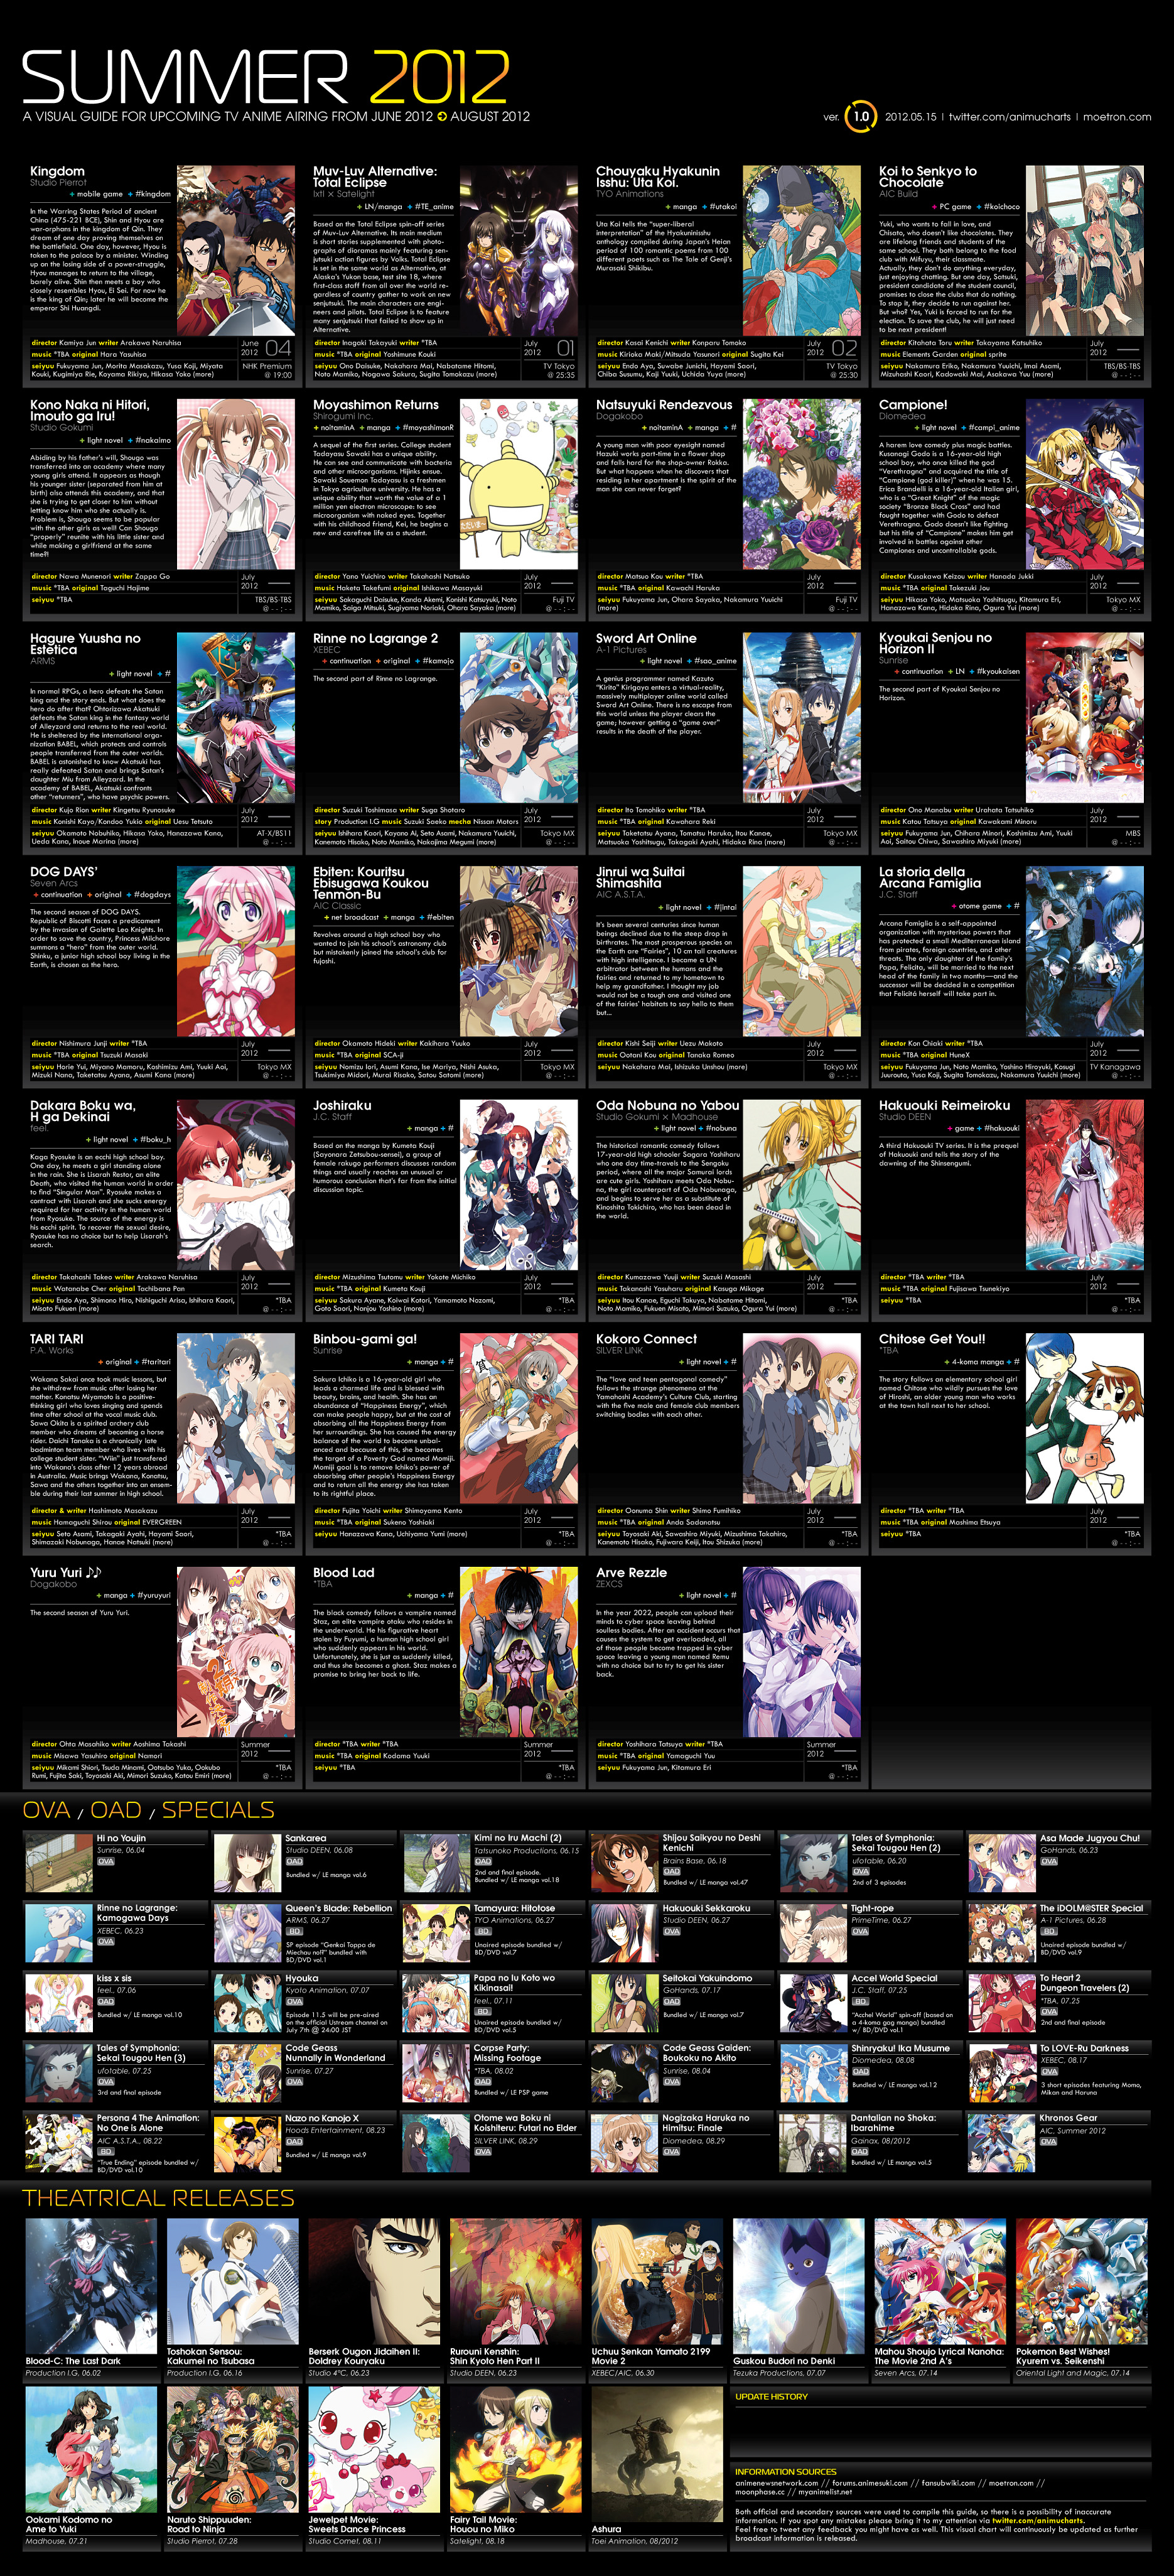 Web Novel Anime Chart